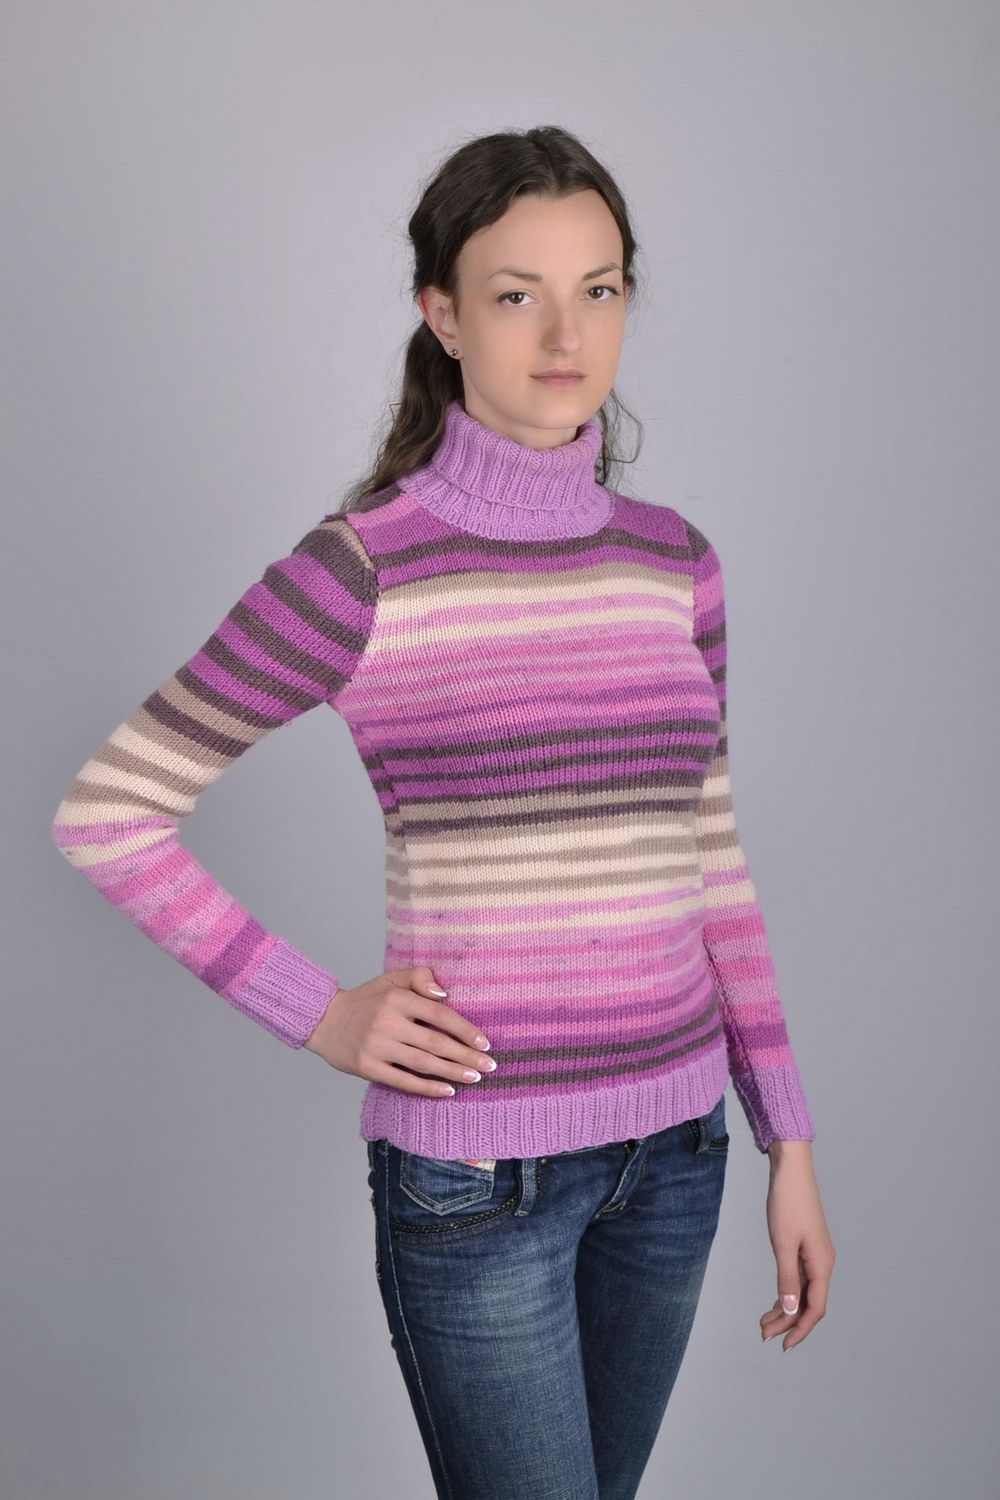 Шерстяной вязаный свитер в сиреневых тонах фото 1